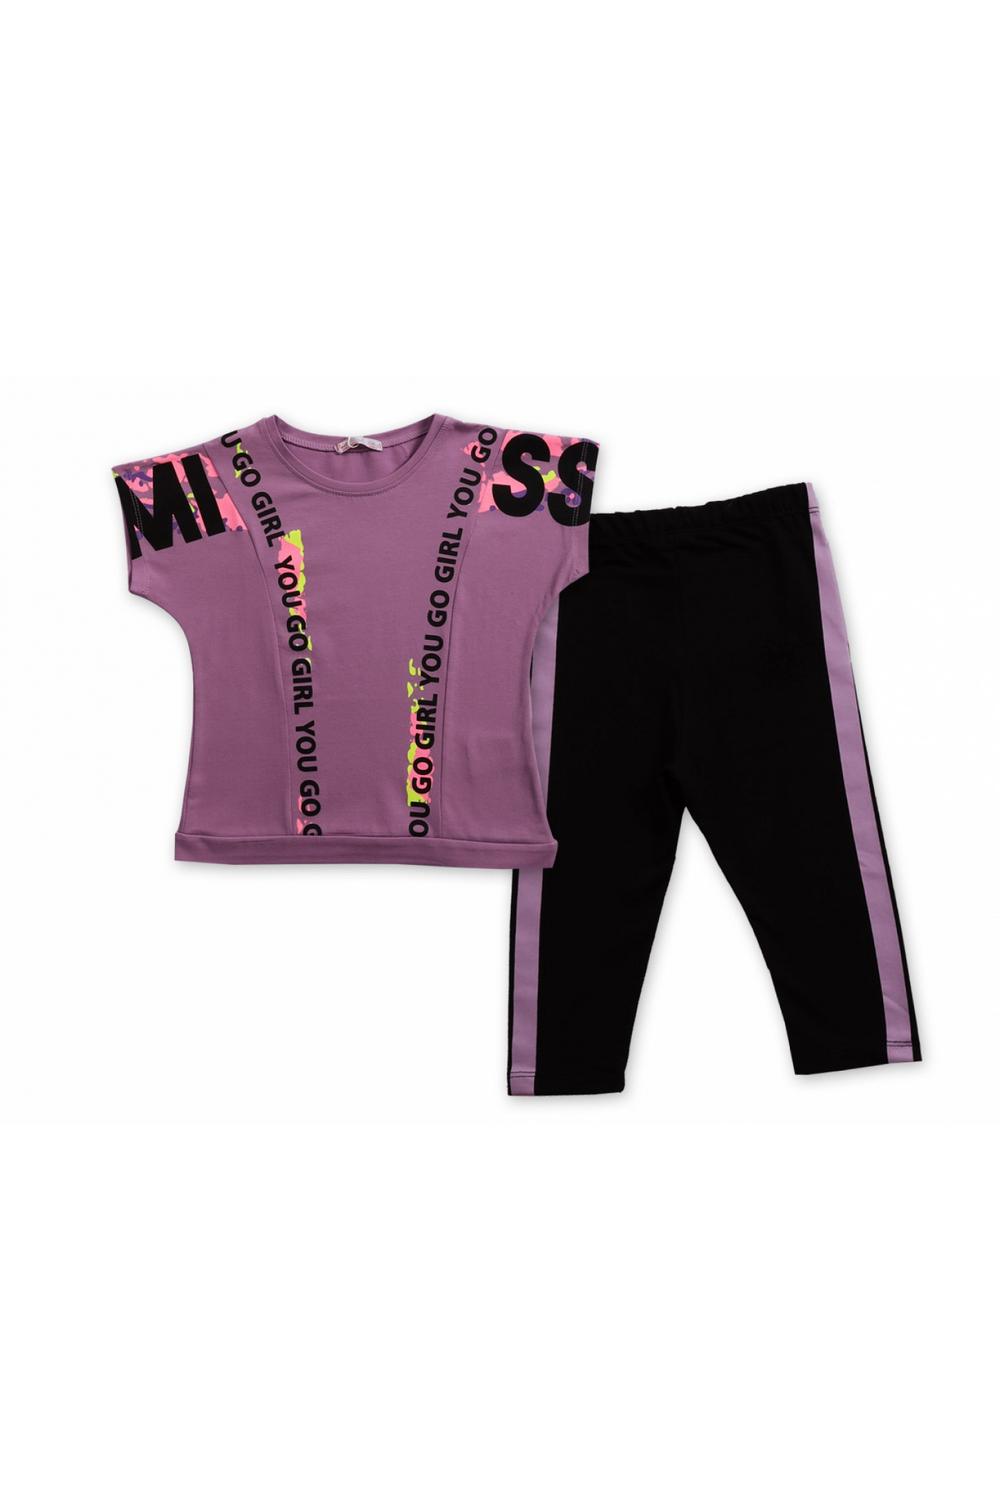 Girl T-Shirt Sweatpants Set / 6Y | 7Y | 8Y | 9Y - Kids Fashion Turkey